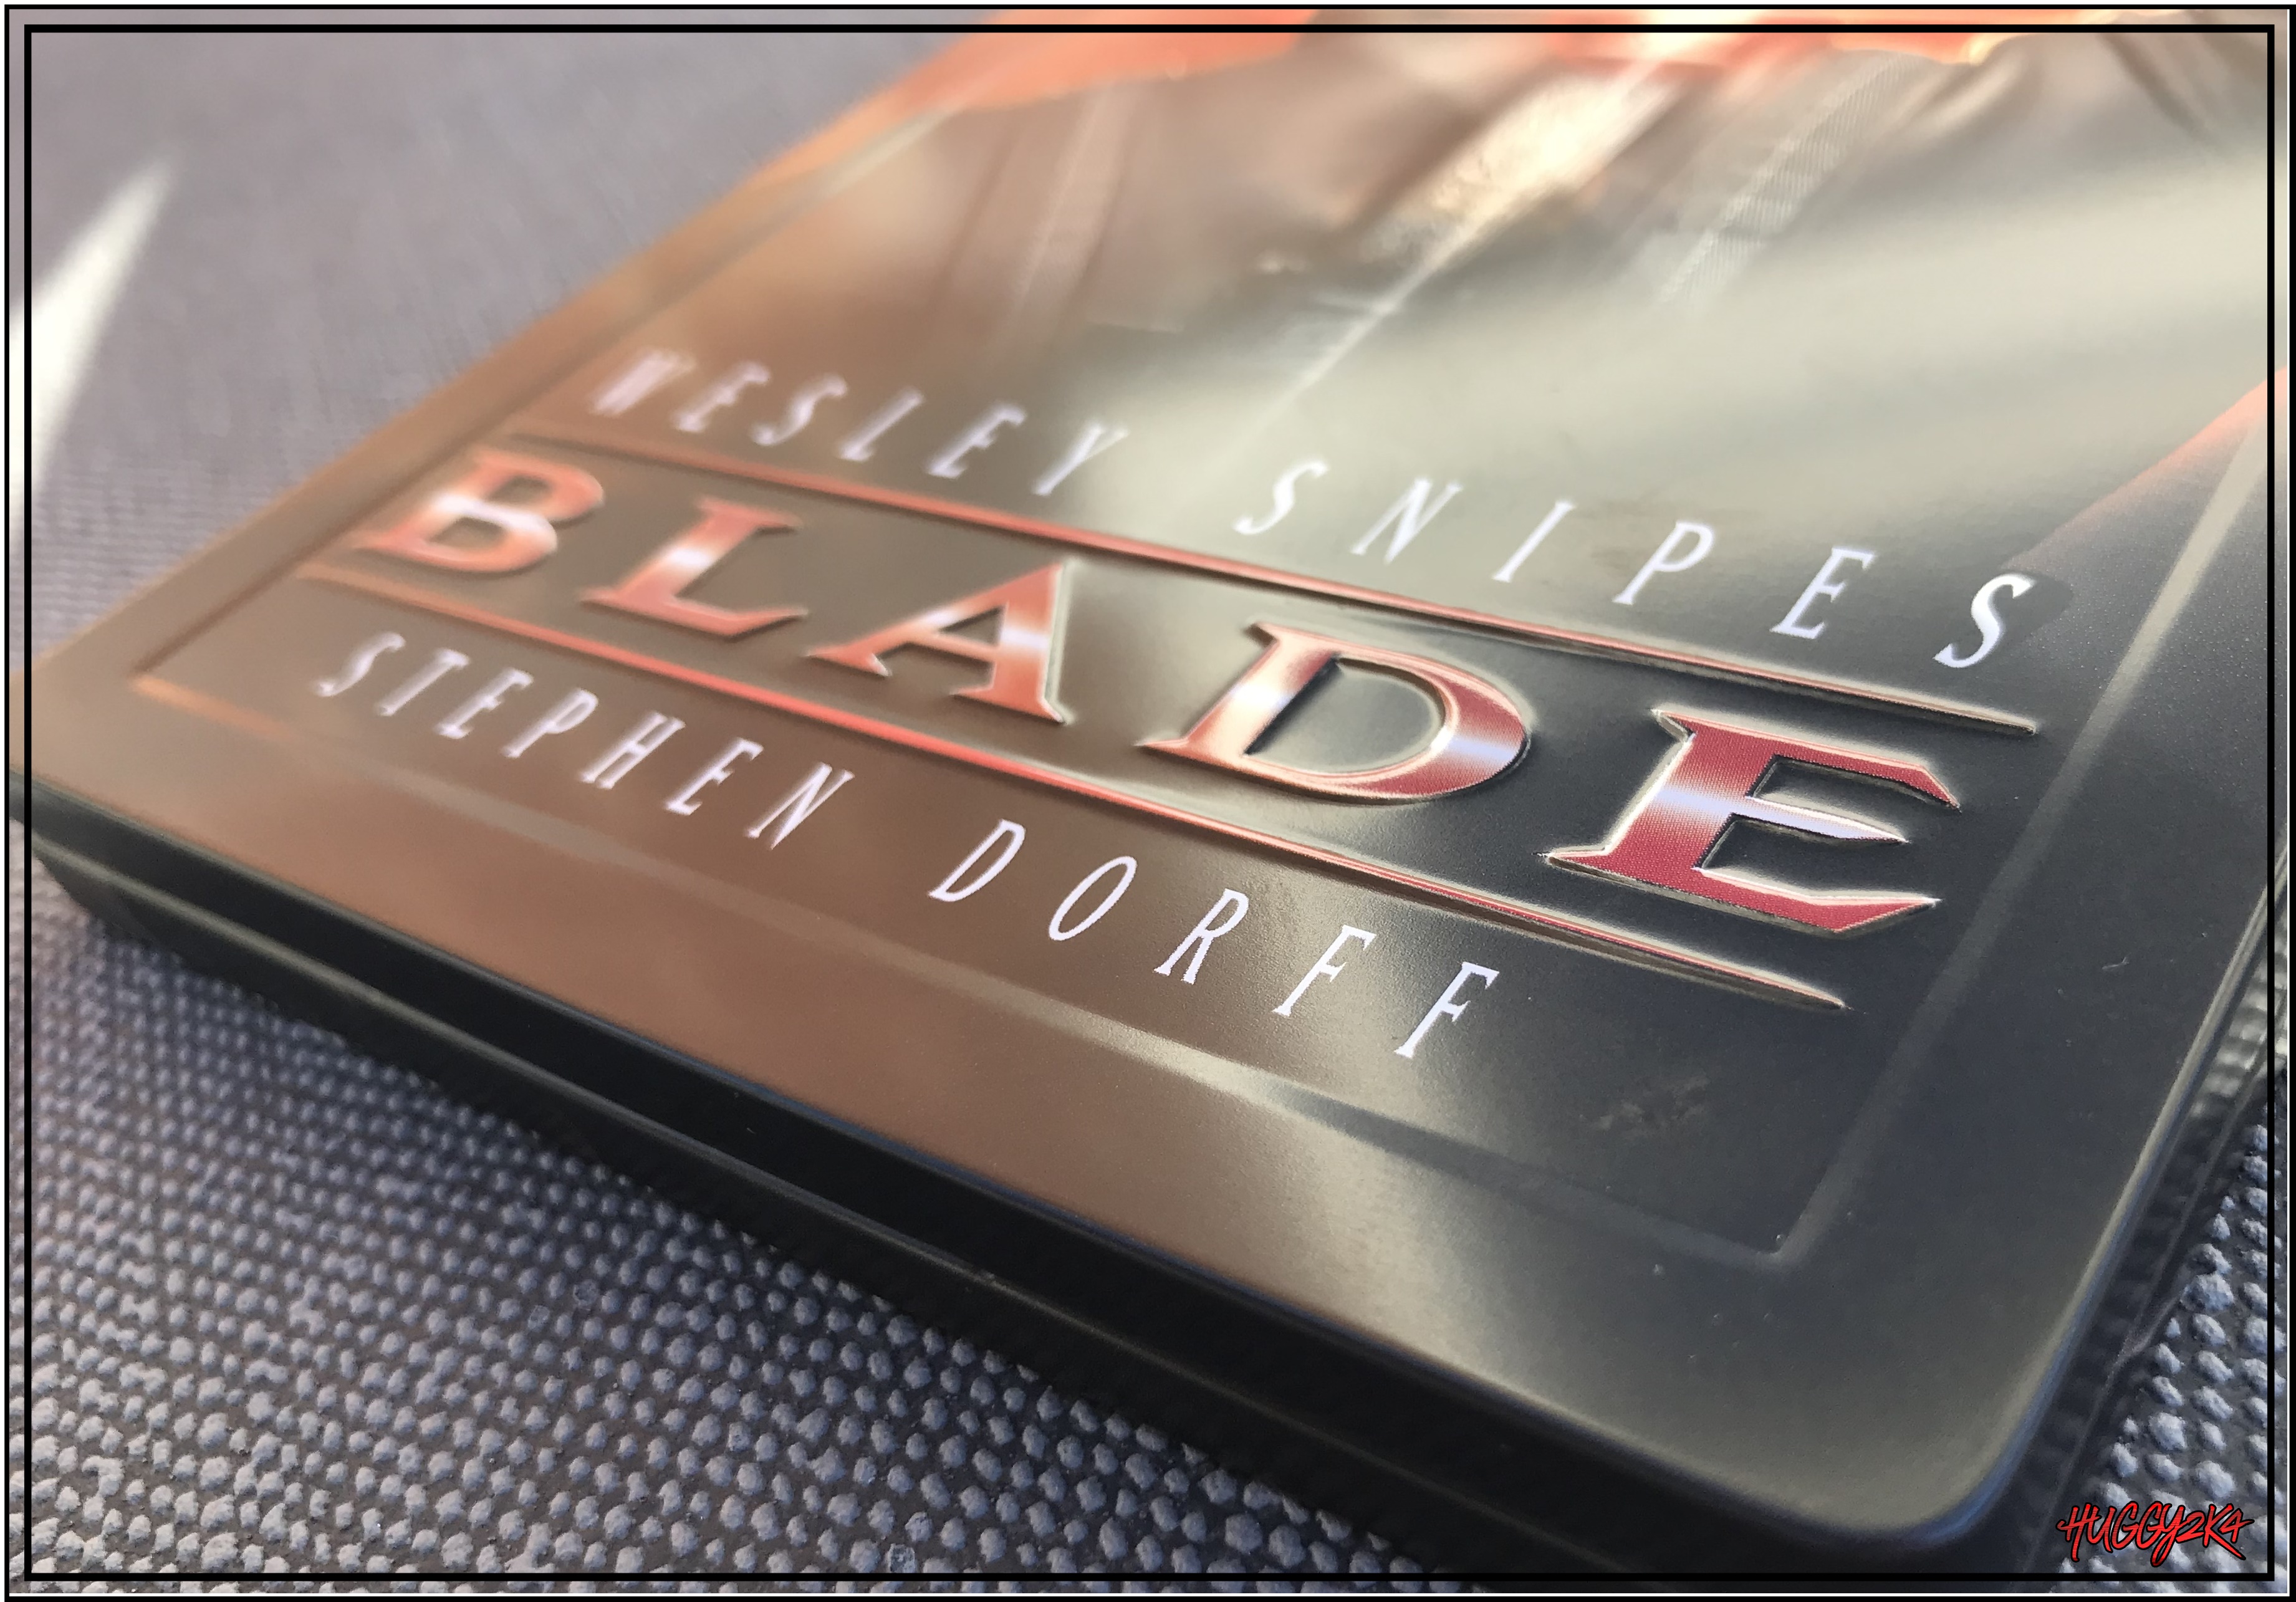 Blade2.jpg